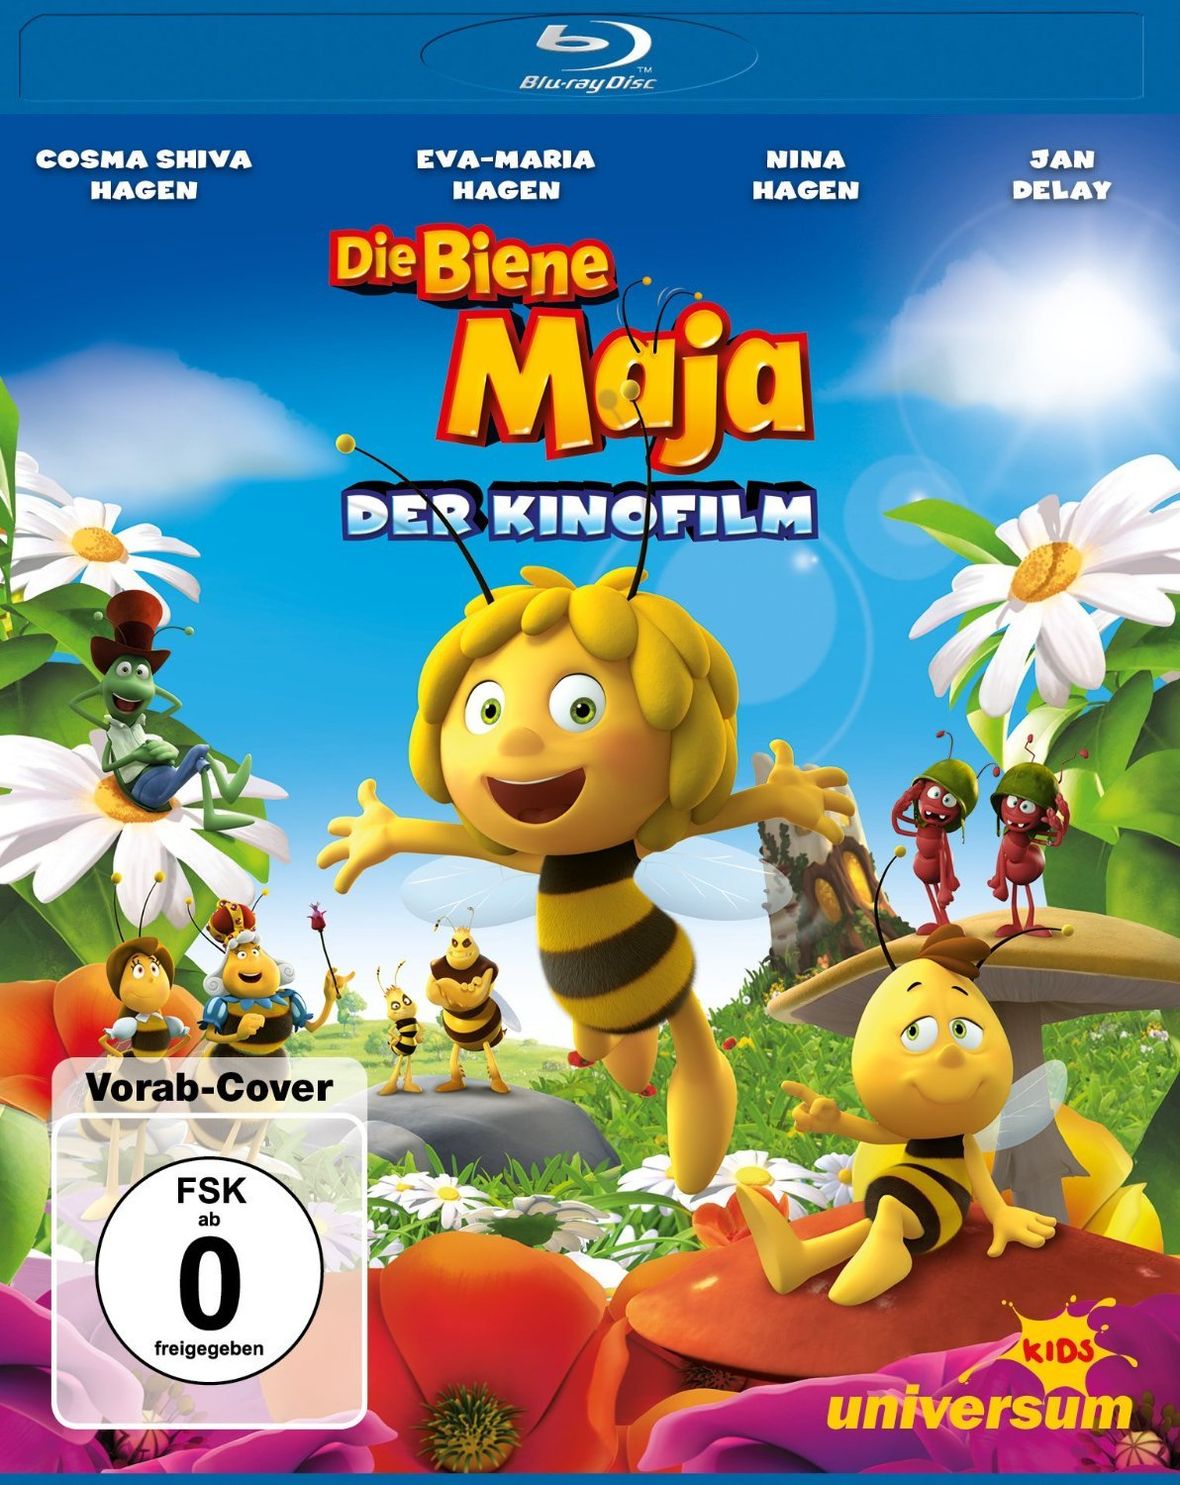 Die Biene Maja - Der Kinofilm Blu-ray bei Weltbild.at kaufen